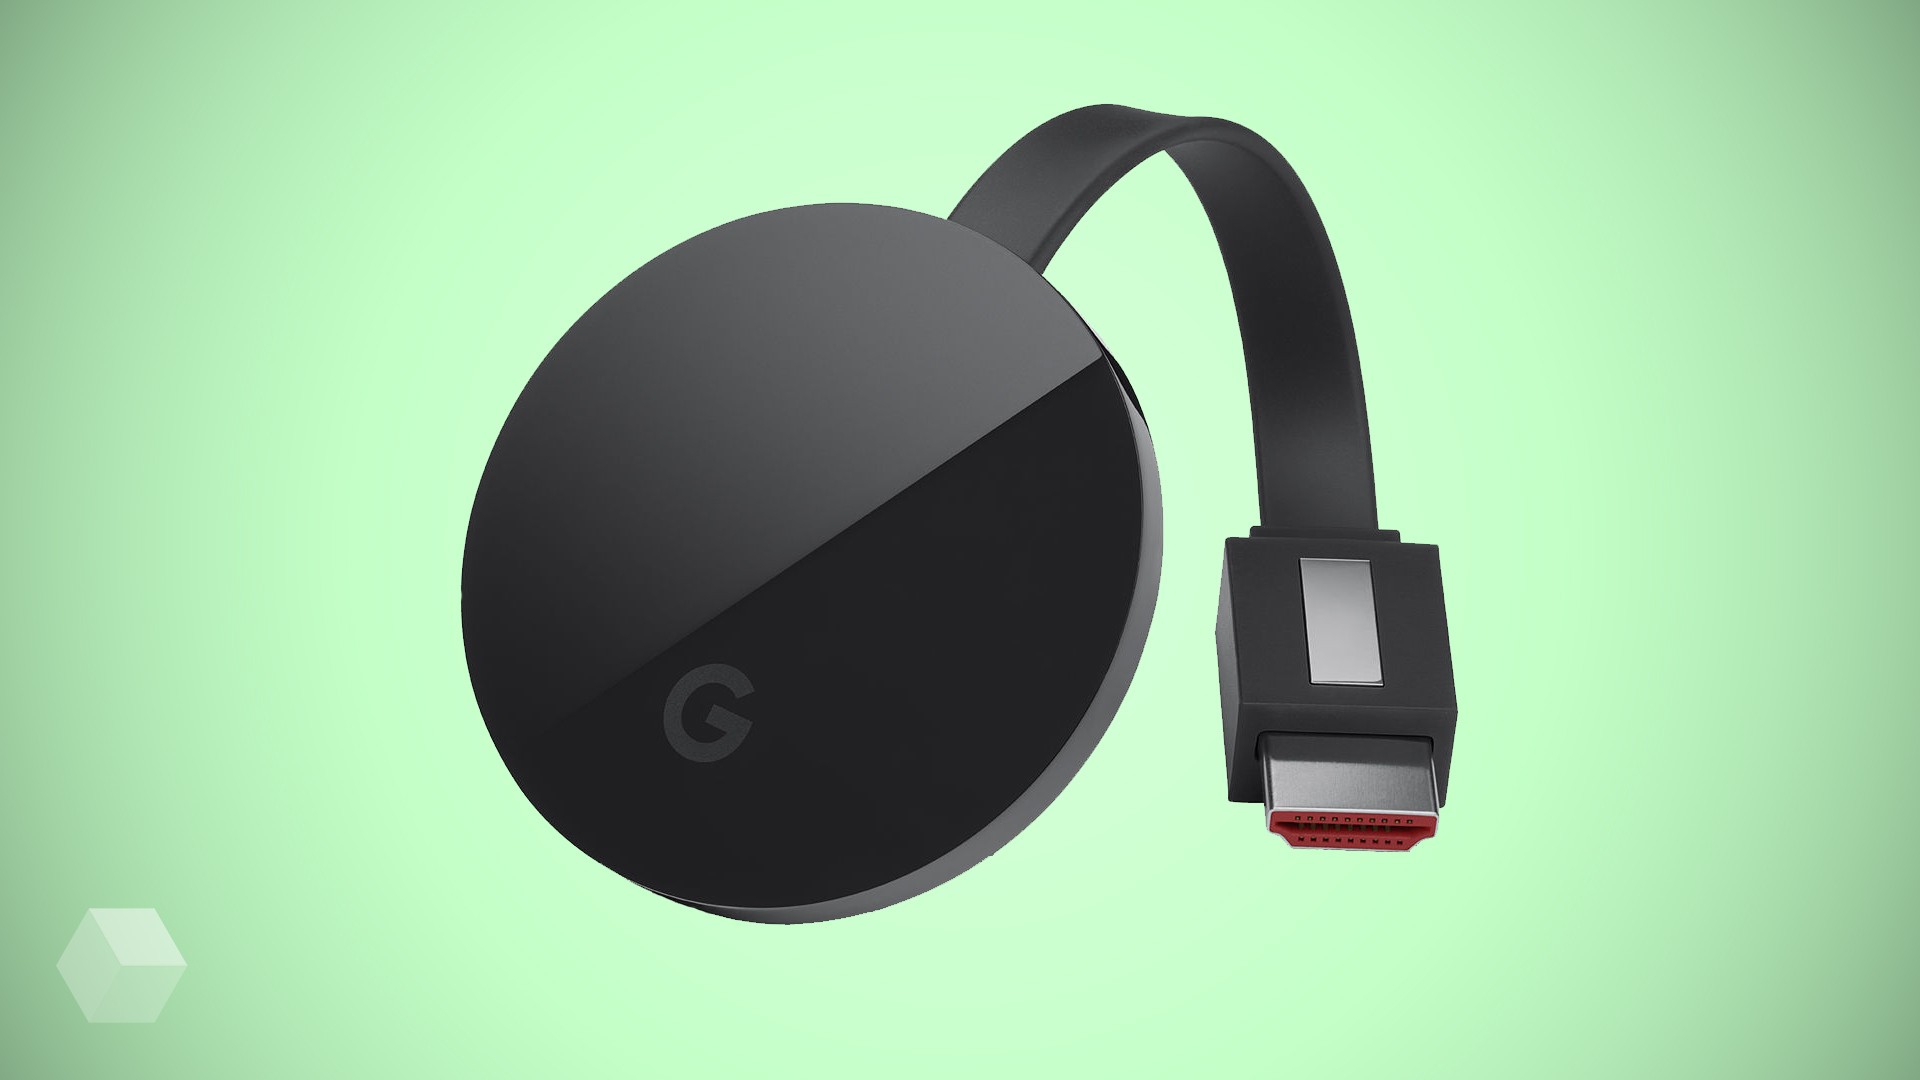 Третье поколение Google Chromecast продали до анонса